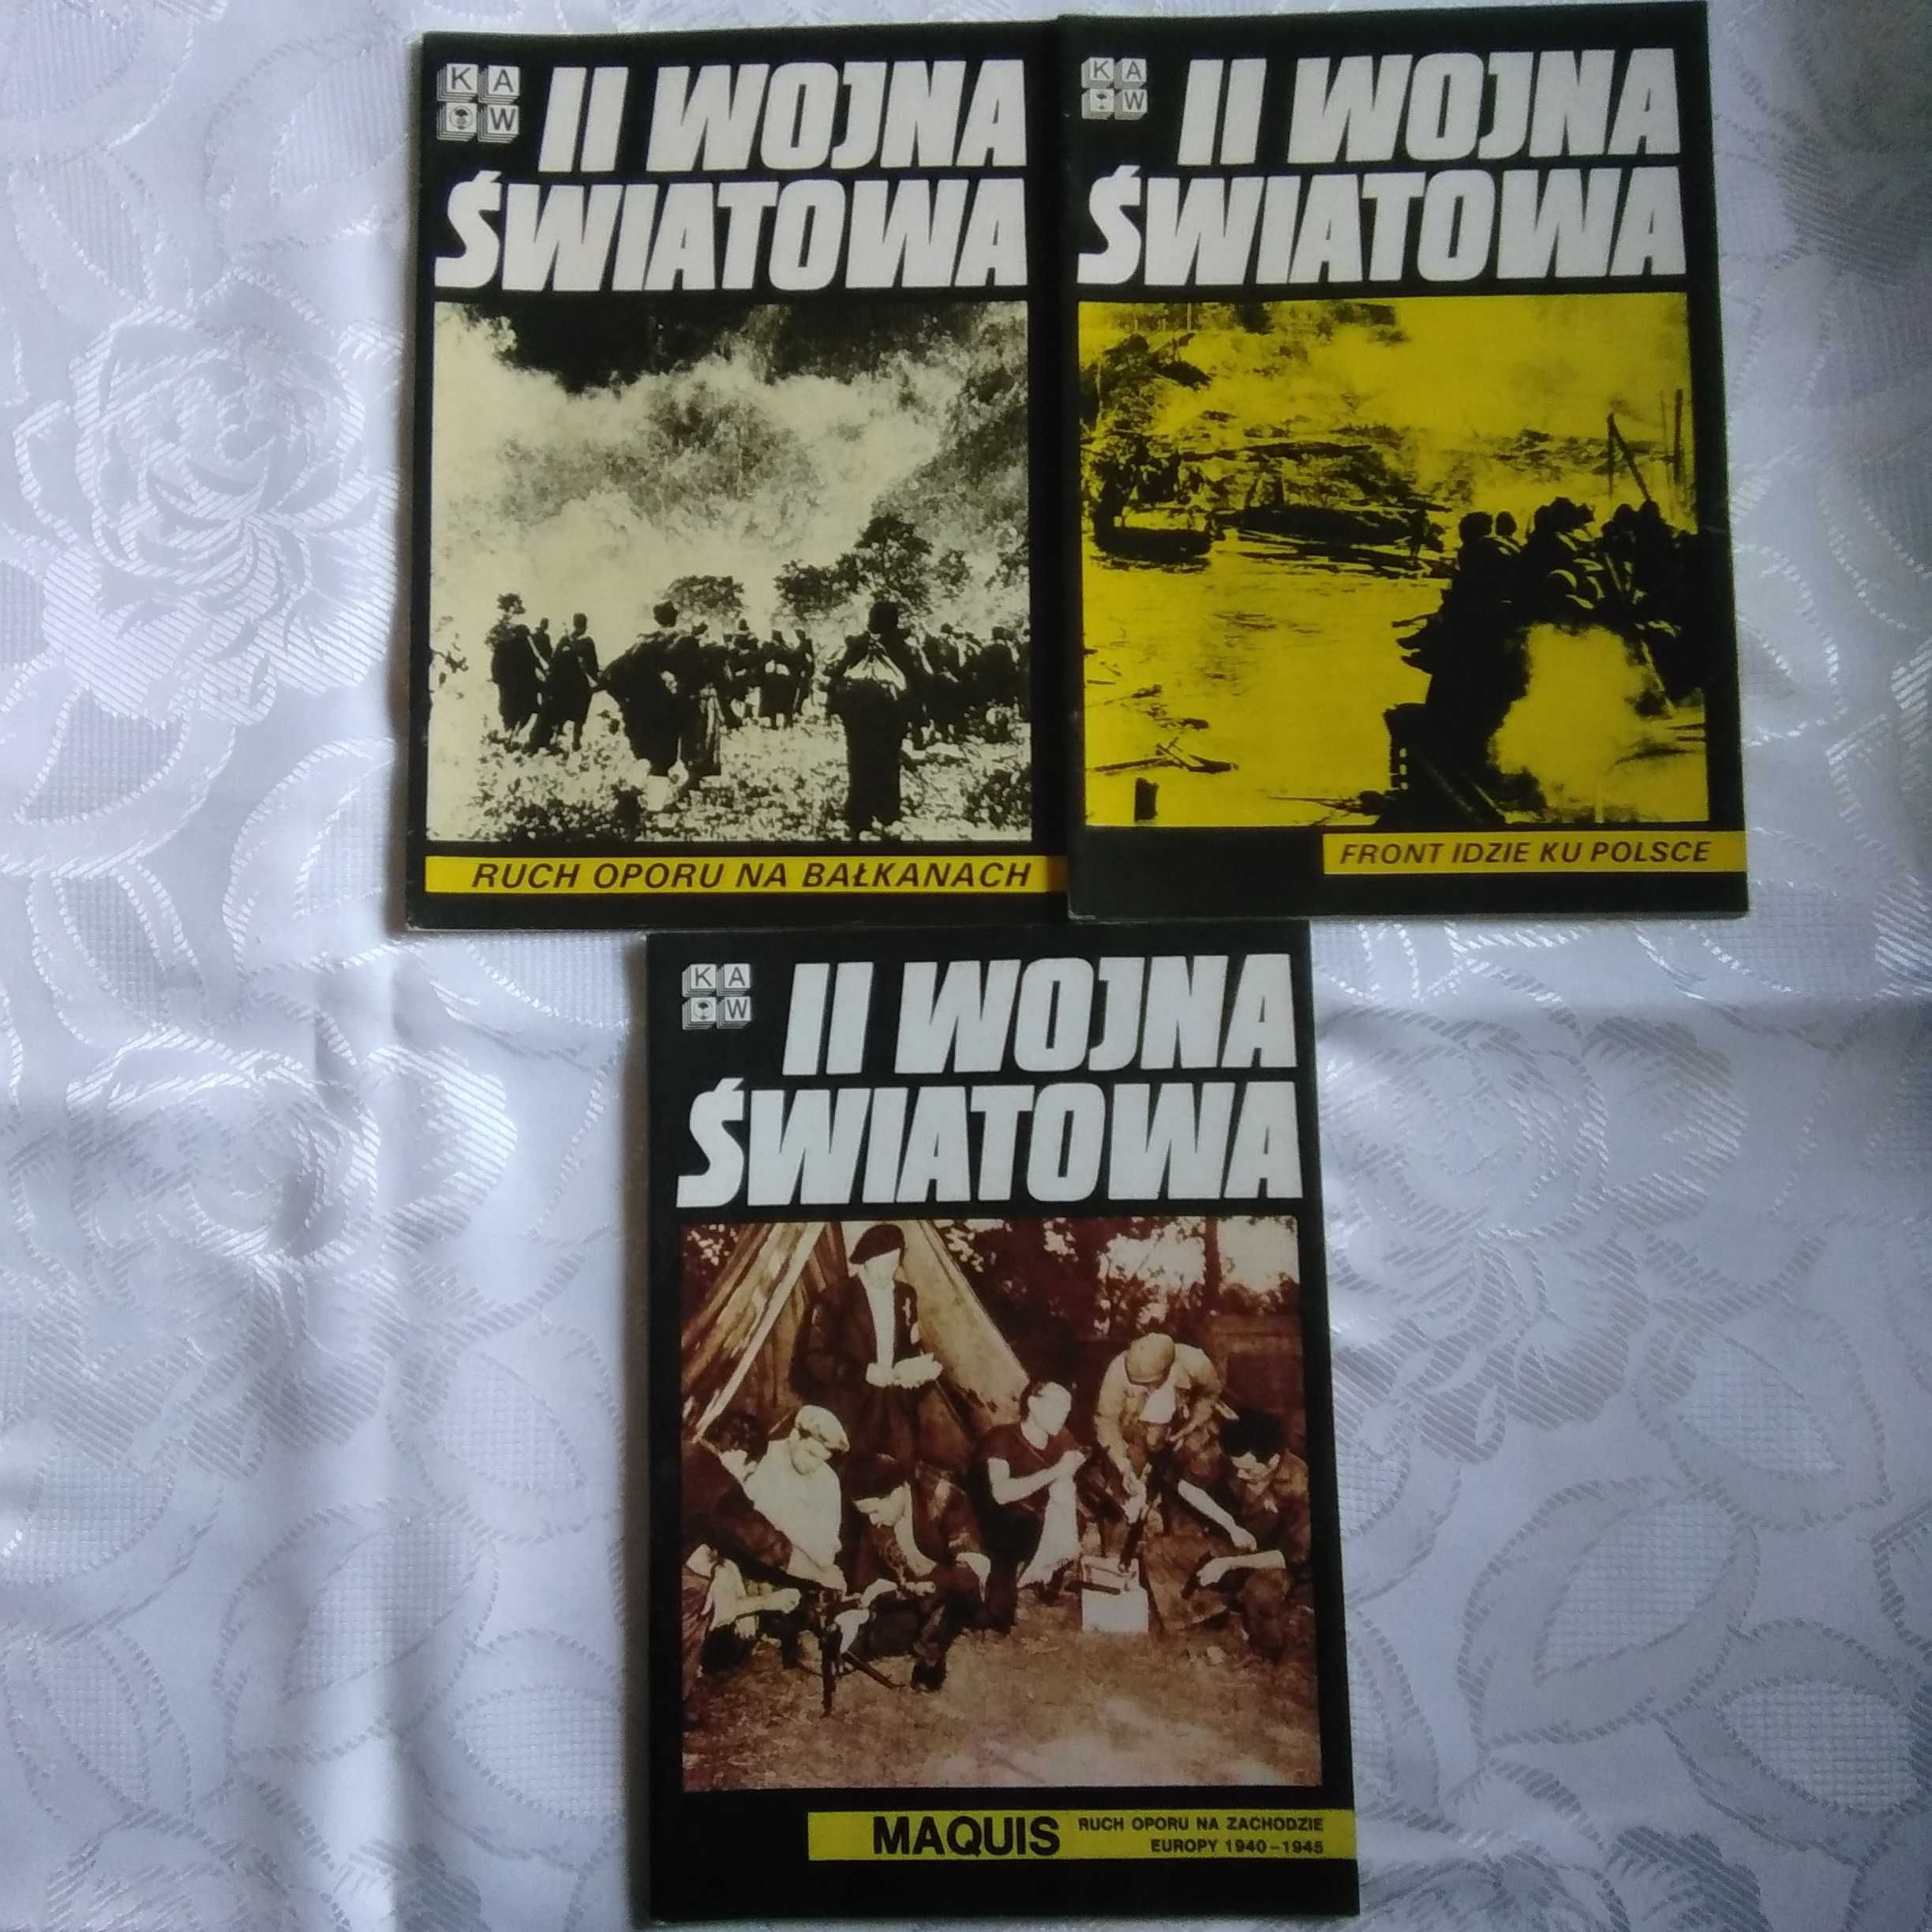 II Wojna Światowa. 3 zeszyty KAW z 1986r.